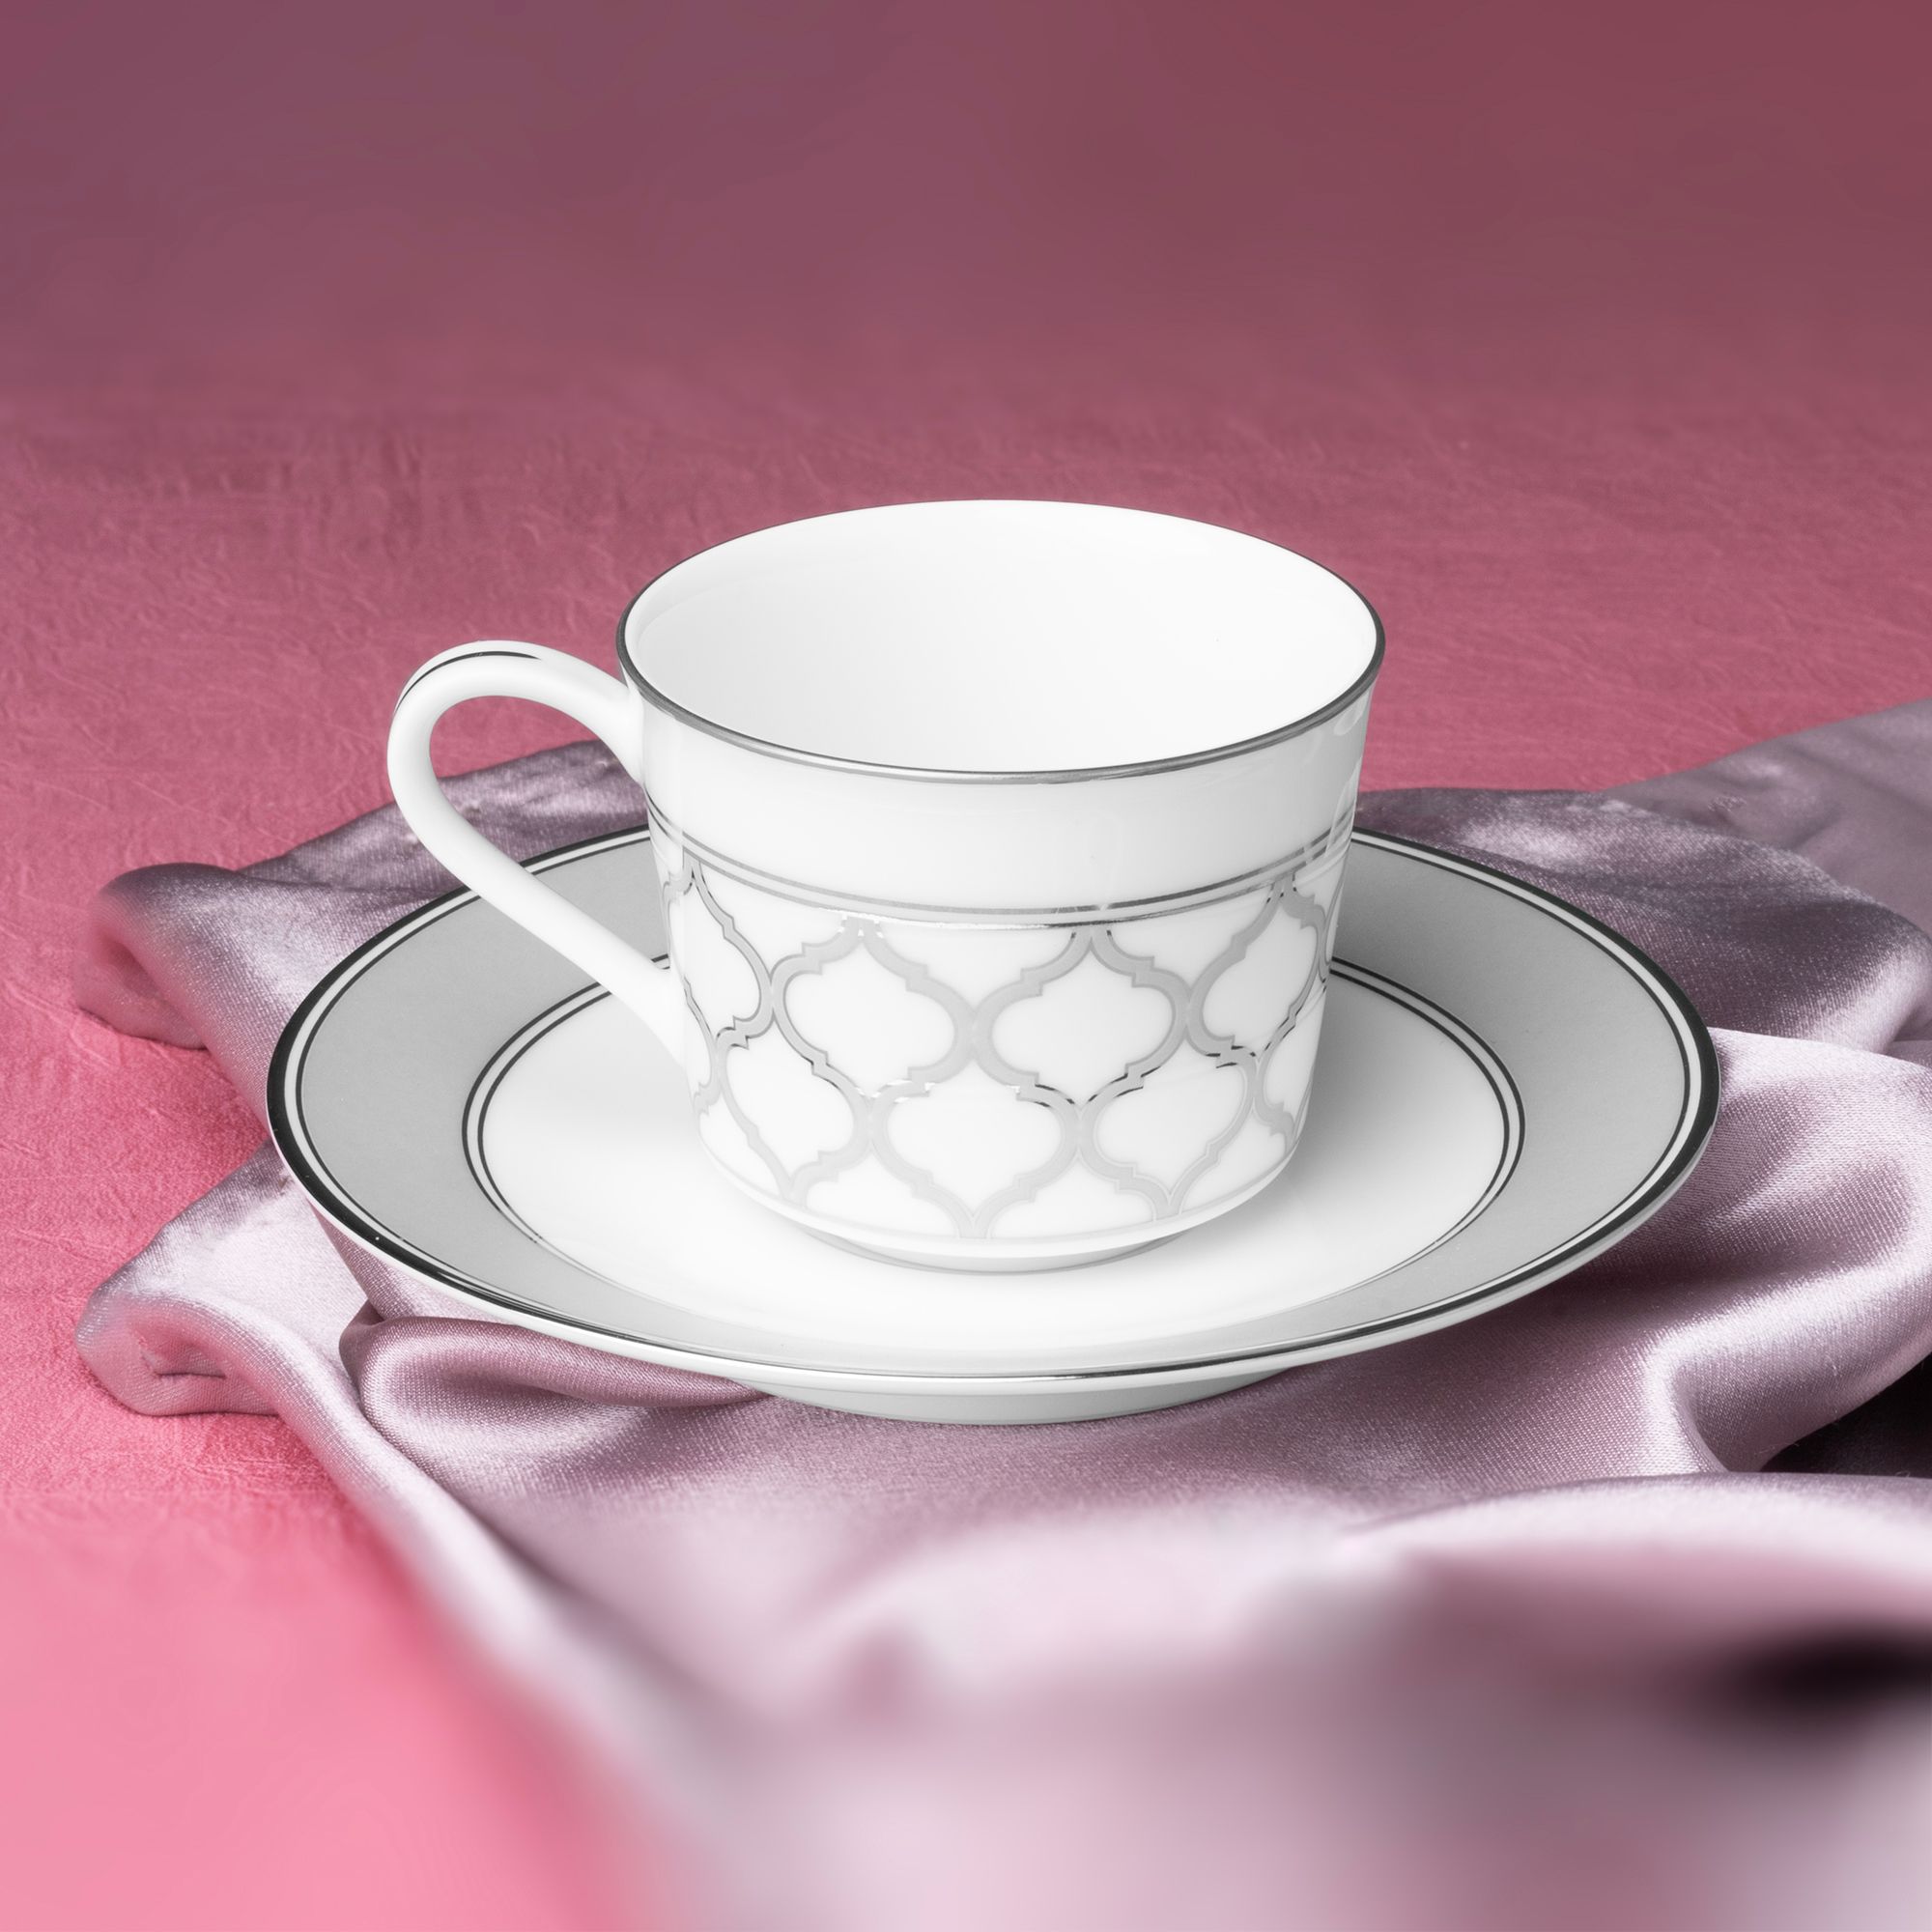  Bộ ấm chén uống trà 13 món (ấm 630ml, tách 100ml) sứ trắng| Eternal Palace 1717L-T014S 